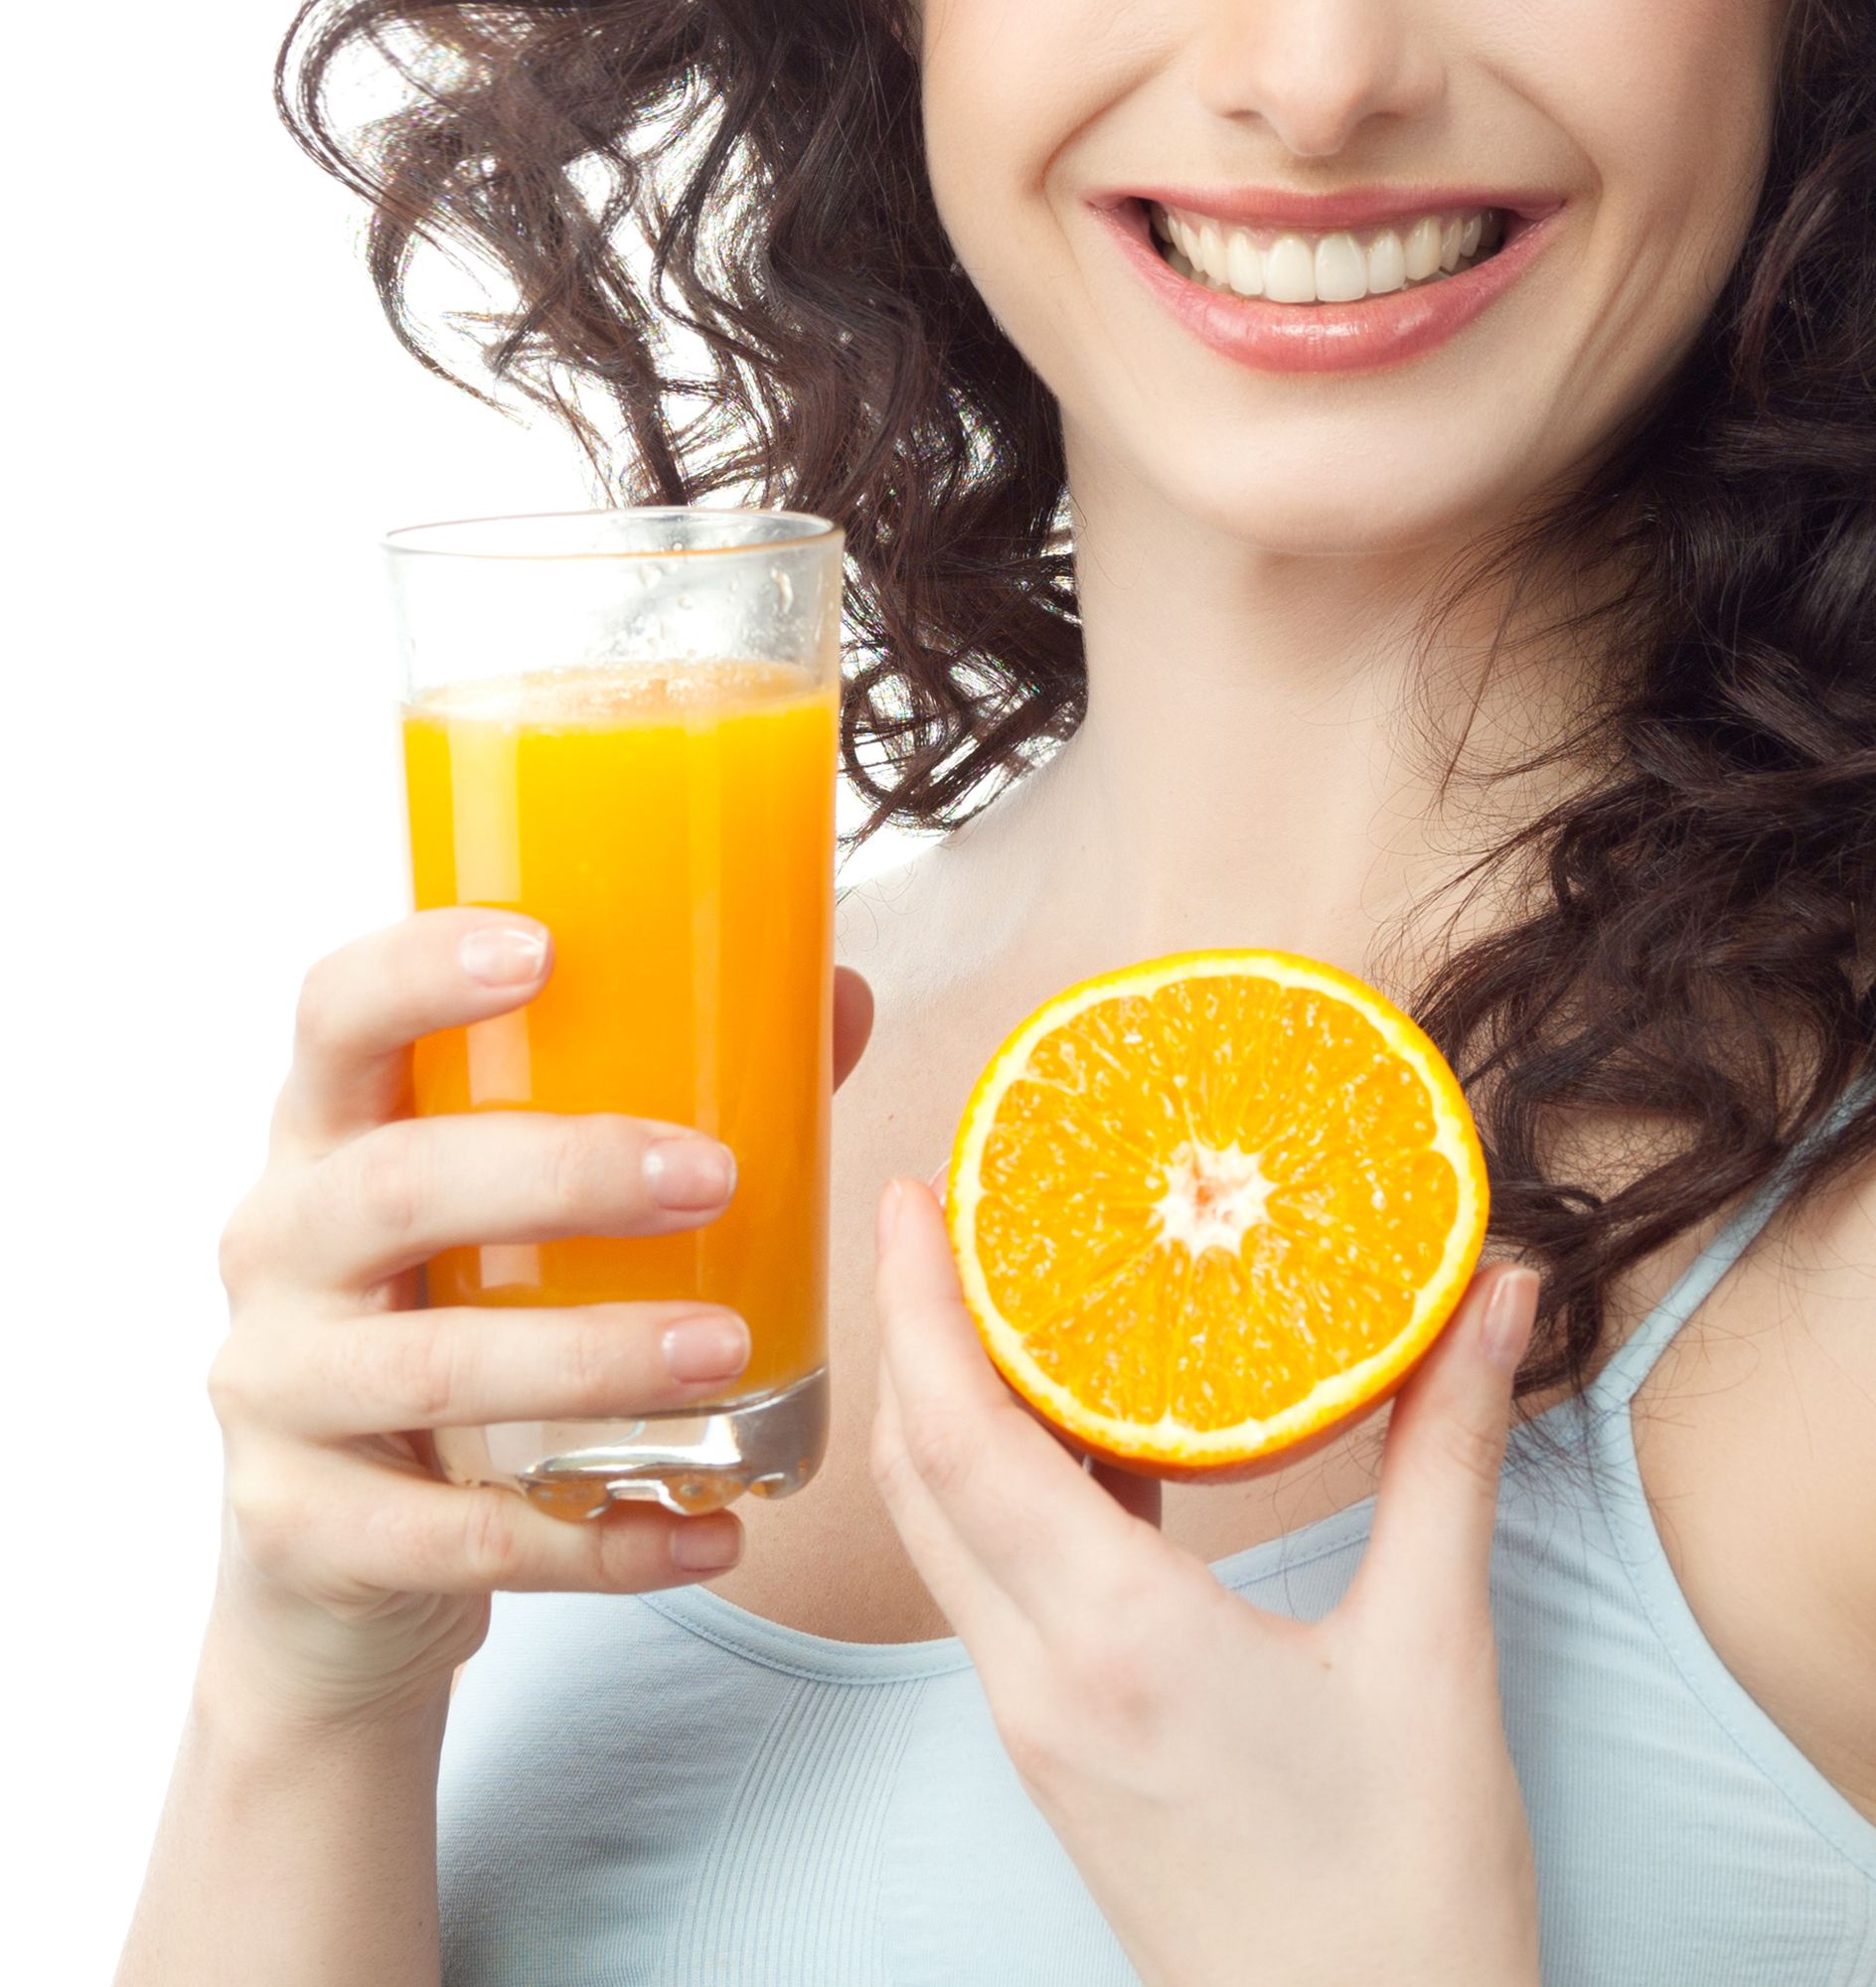 البرتقال من أهم المصادر الطبيعية لحمض الفوليك